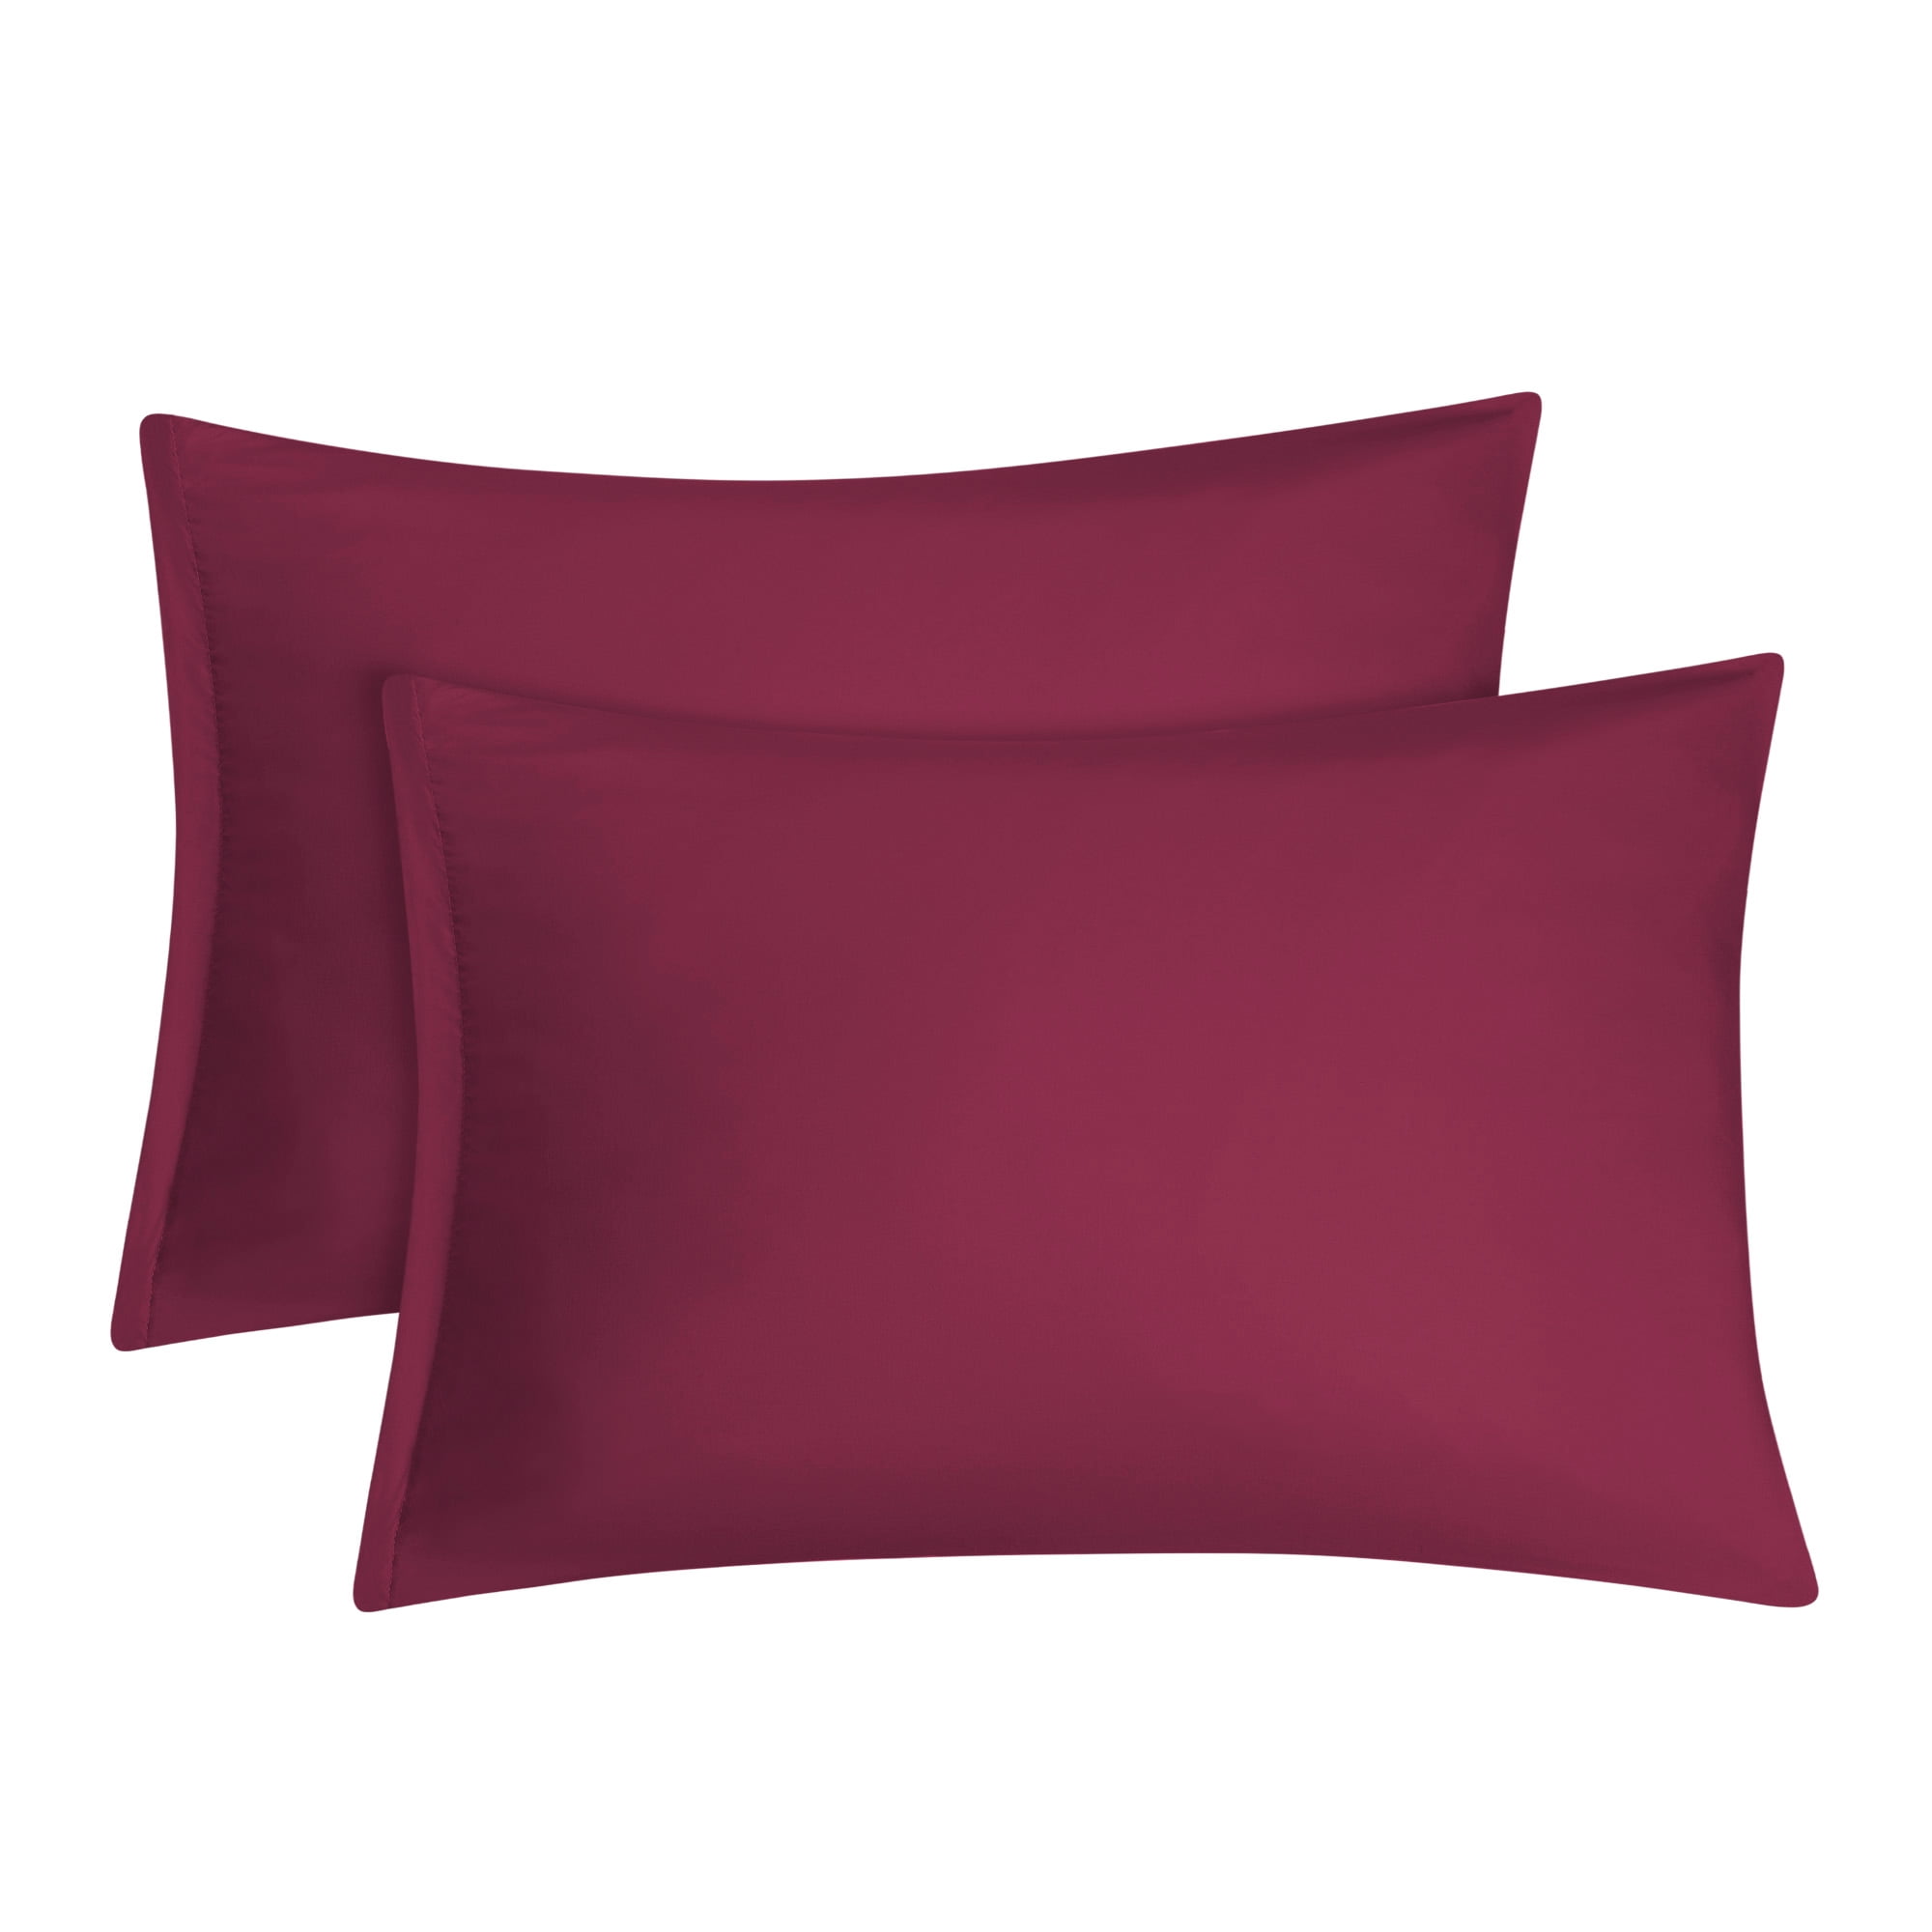 2 Pcs Travel Size Pillowcases Soft 1800 Microfiber Pillow Case Covers 17 Colors 